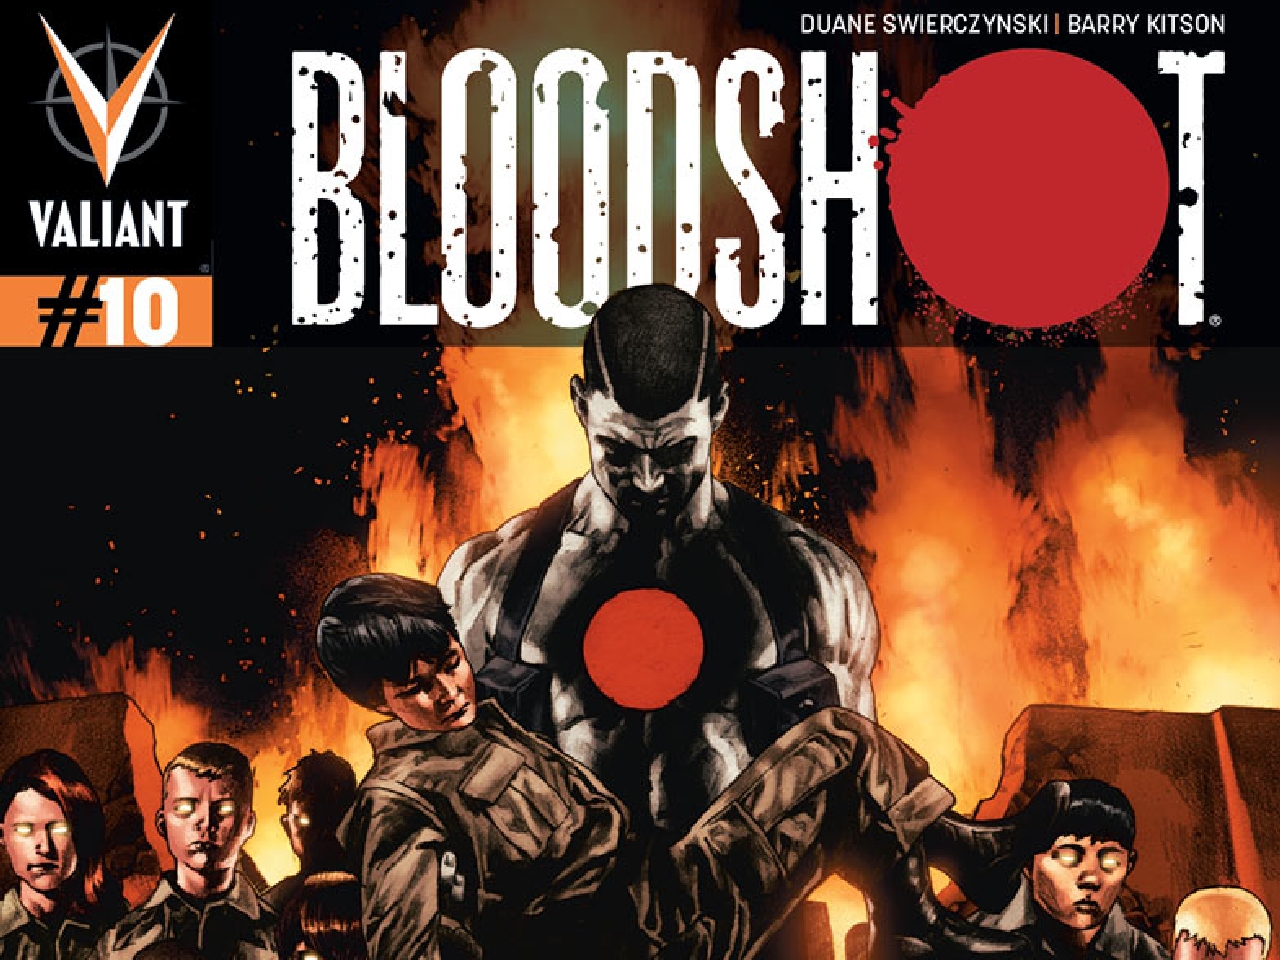 comics, bloodshot, bloodshot (comics)